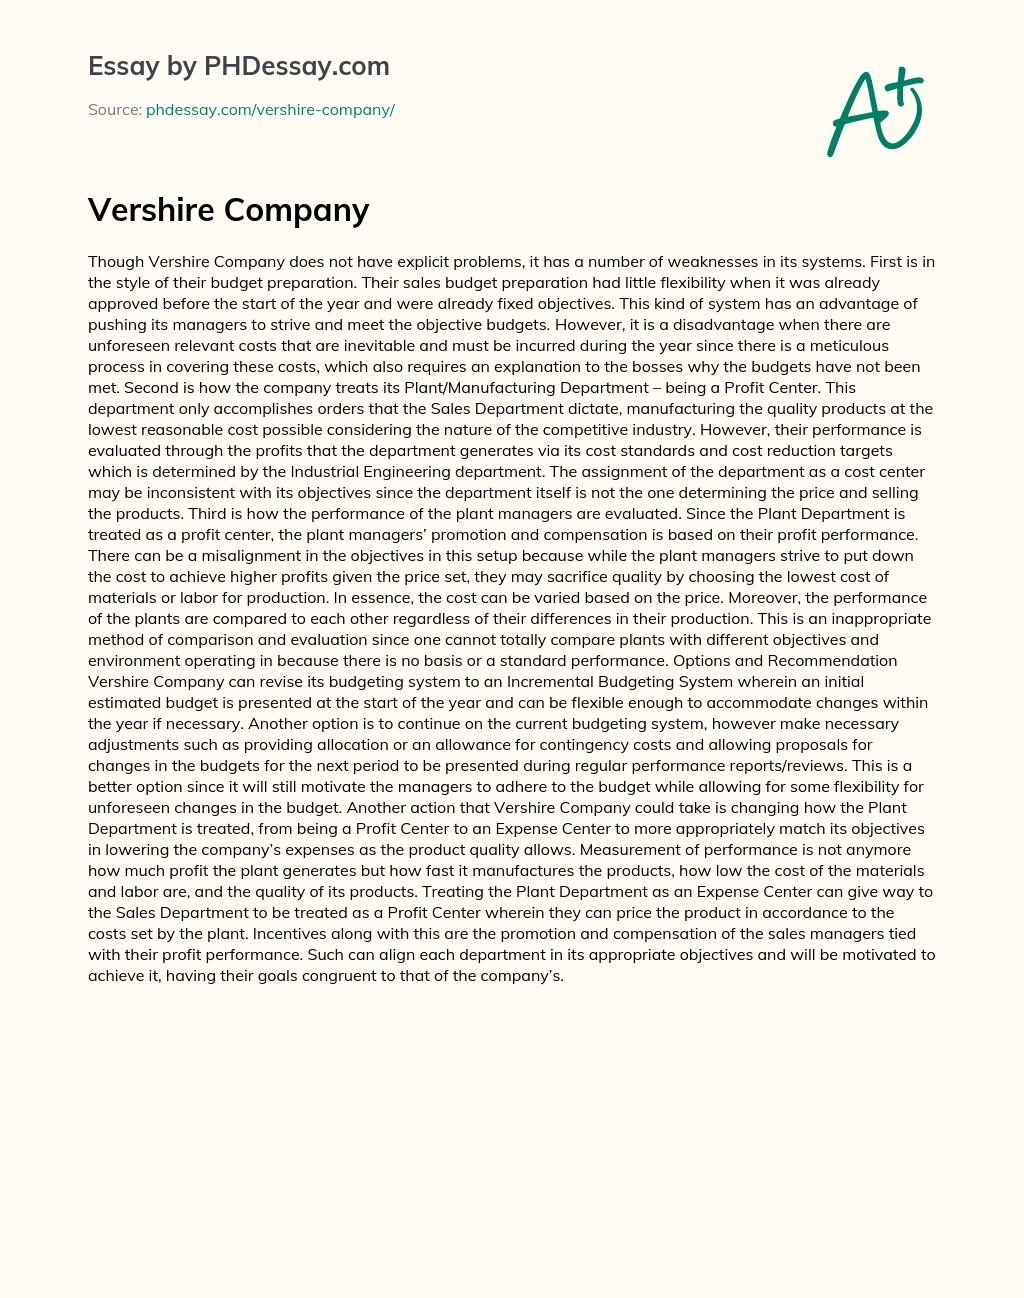 Vershire Company essay